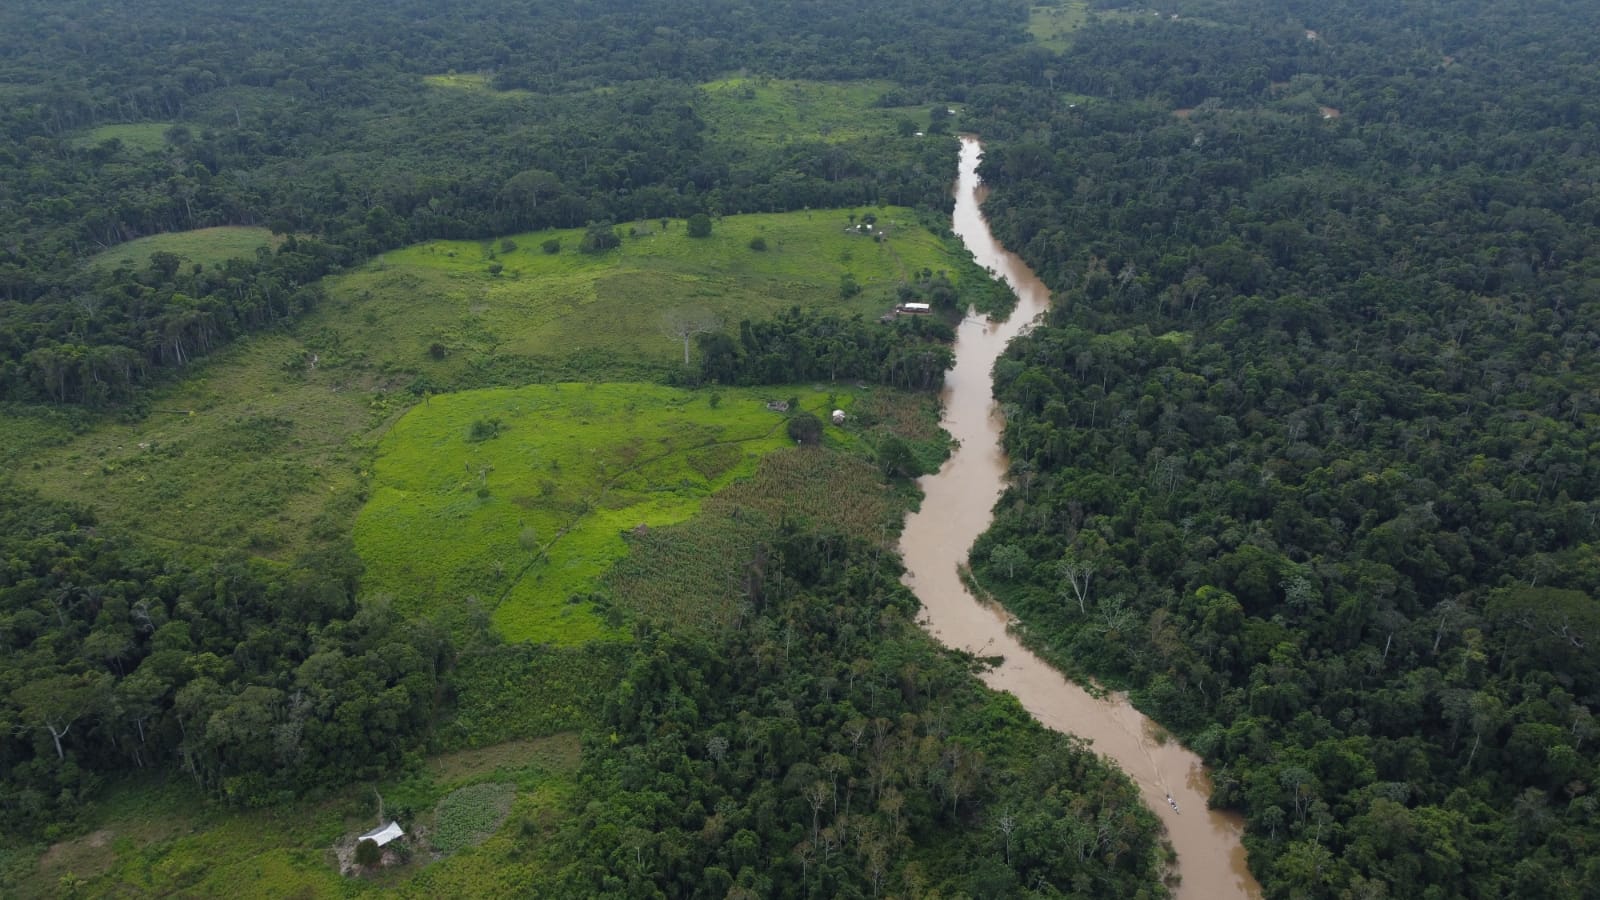 Imagem aérea de uma área com plantações e gado e, do outro lado de um rio, uma área arborizada.